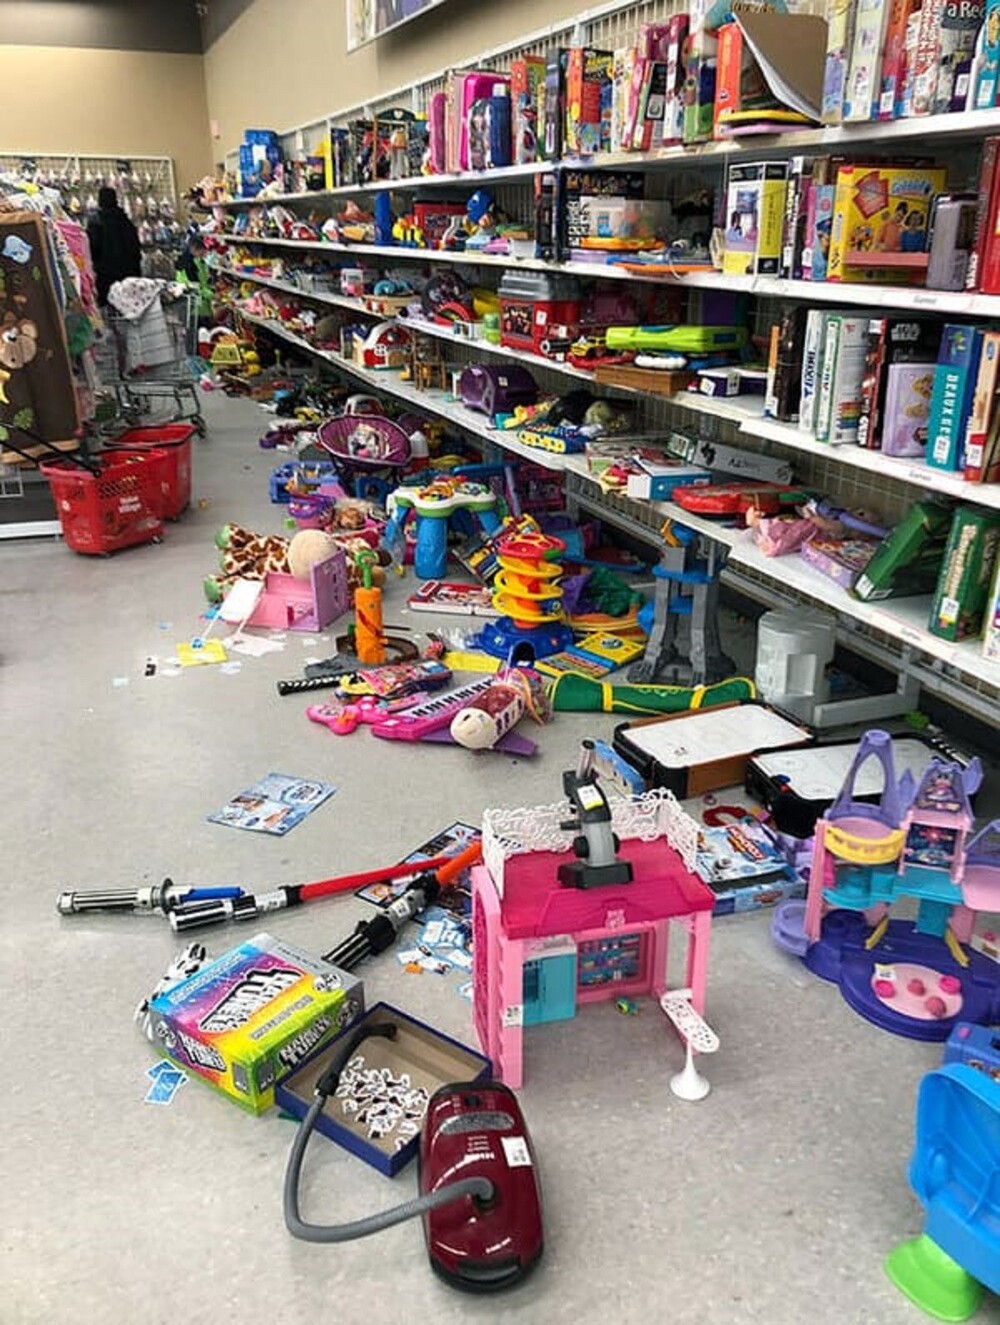 8. "Родители! Магазин - не детская площадка. Убирайте игрушки за своими детьми!"